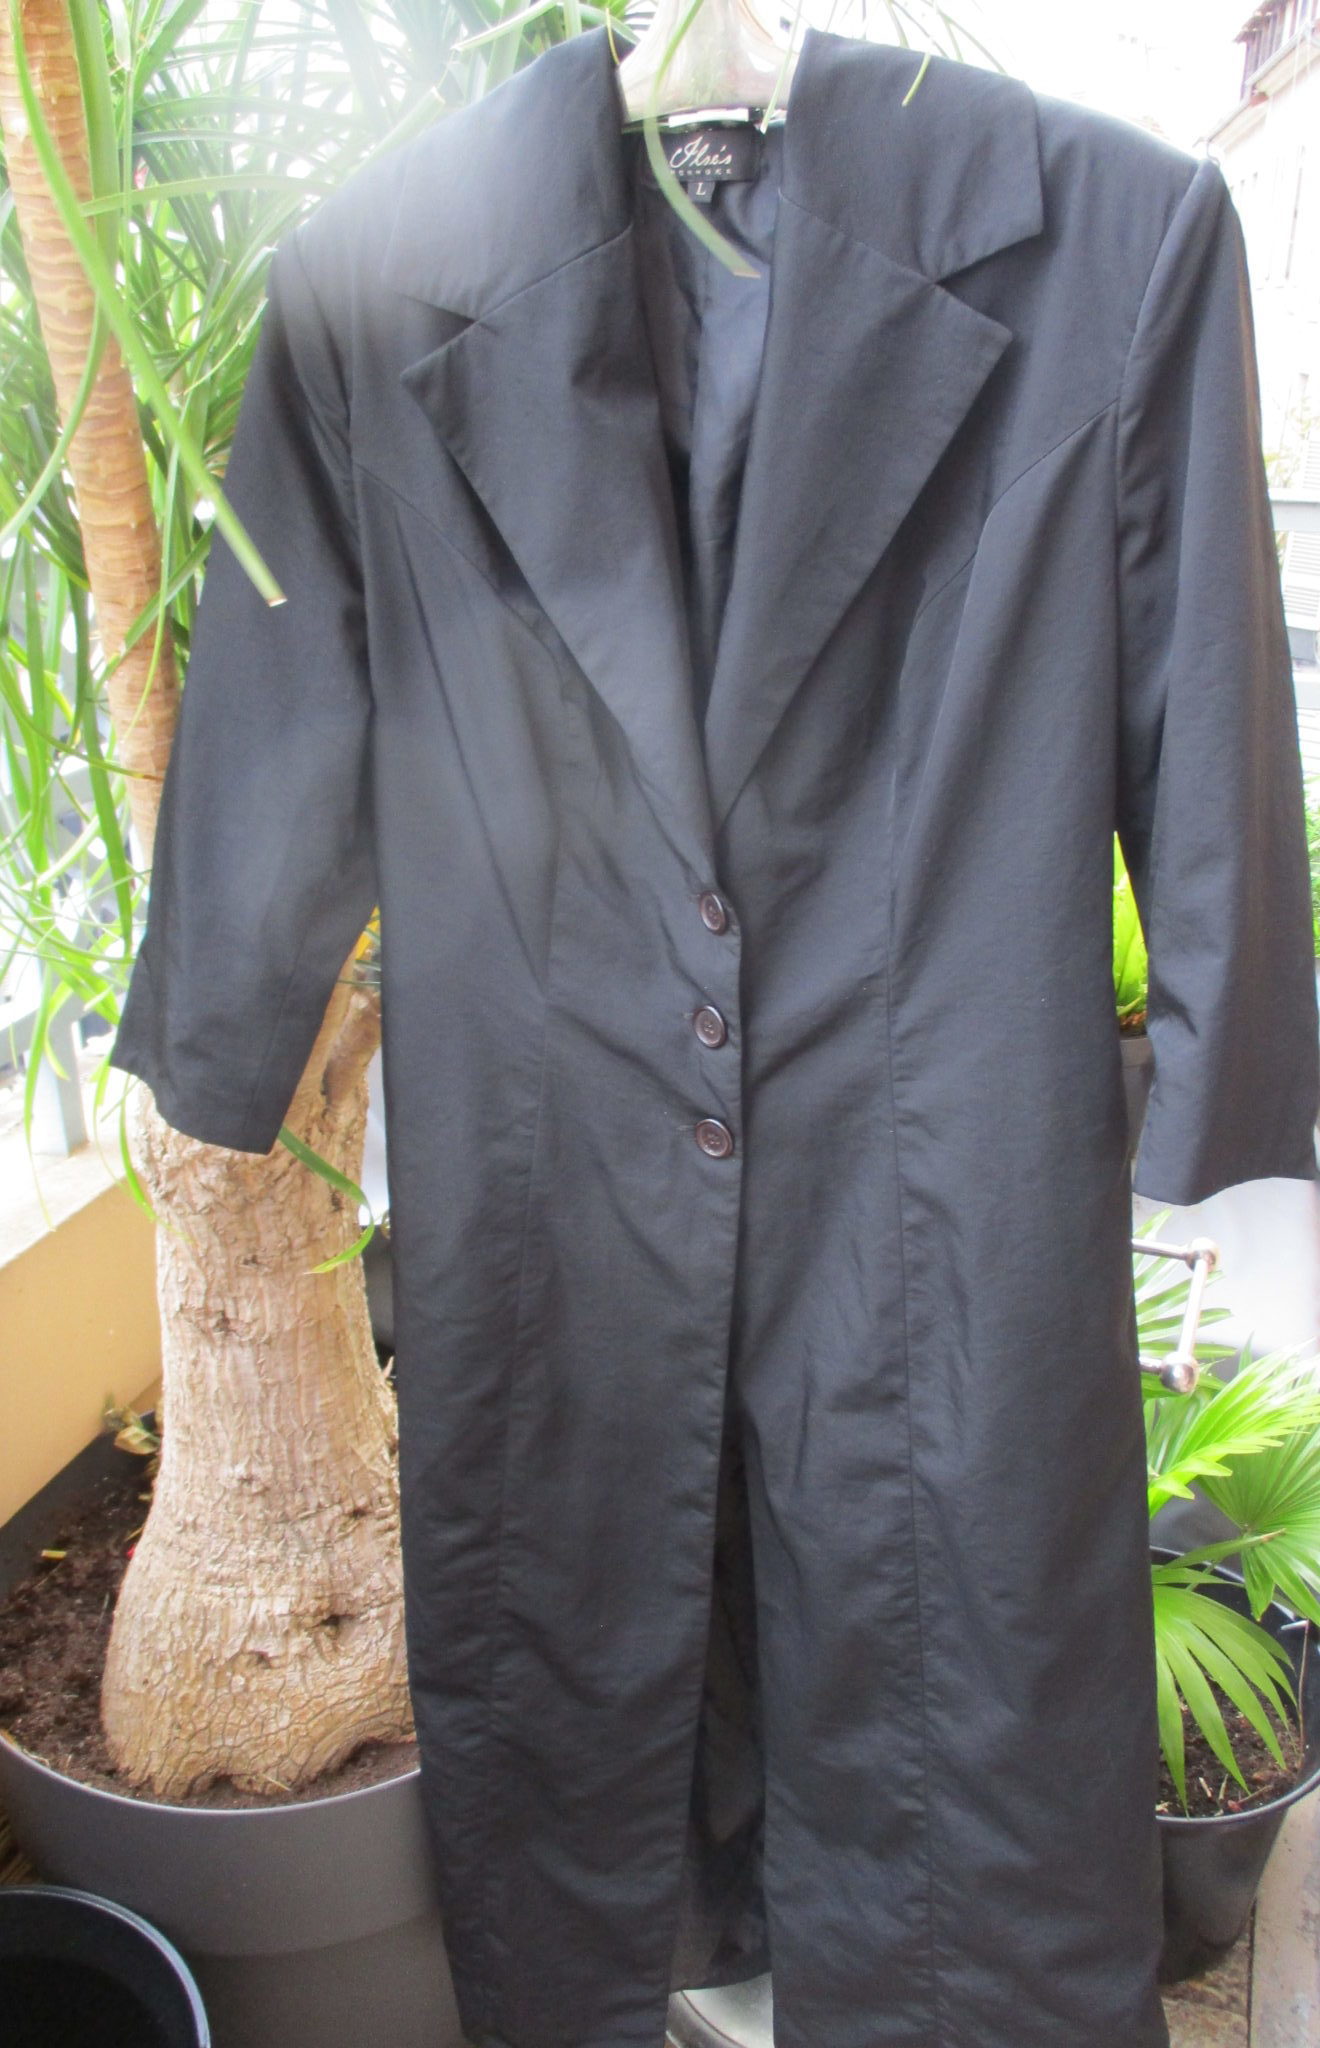 Black tailored coat by Danish designer Ilse Jacobsen